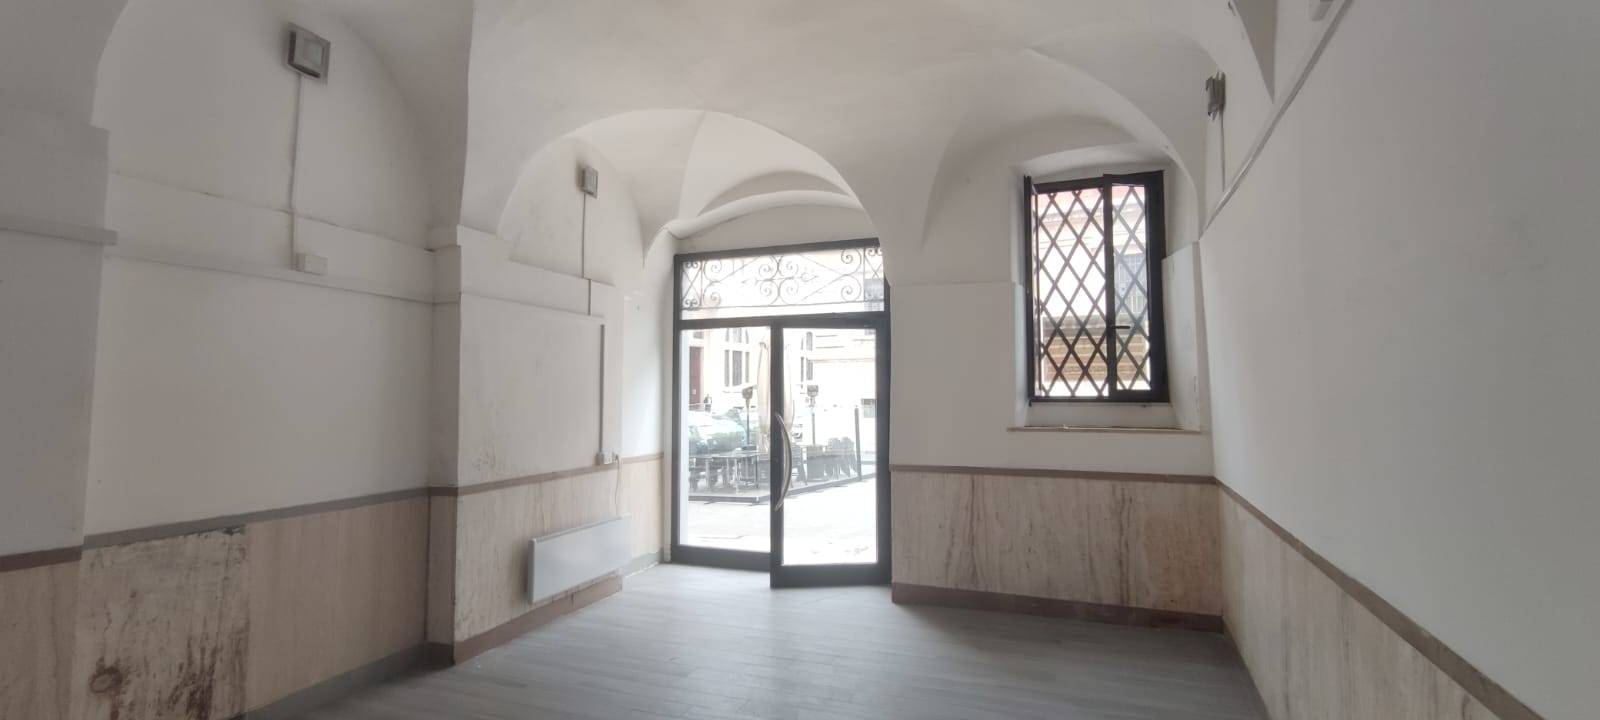 Locale commerciale in affitto, Ascoli Piceno centro storico